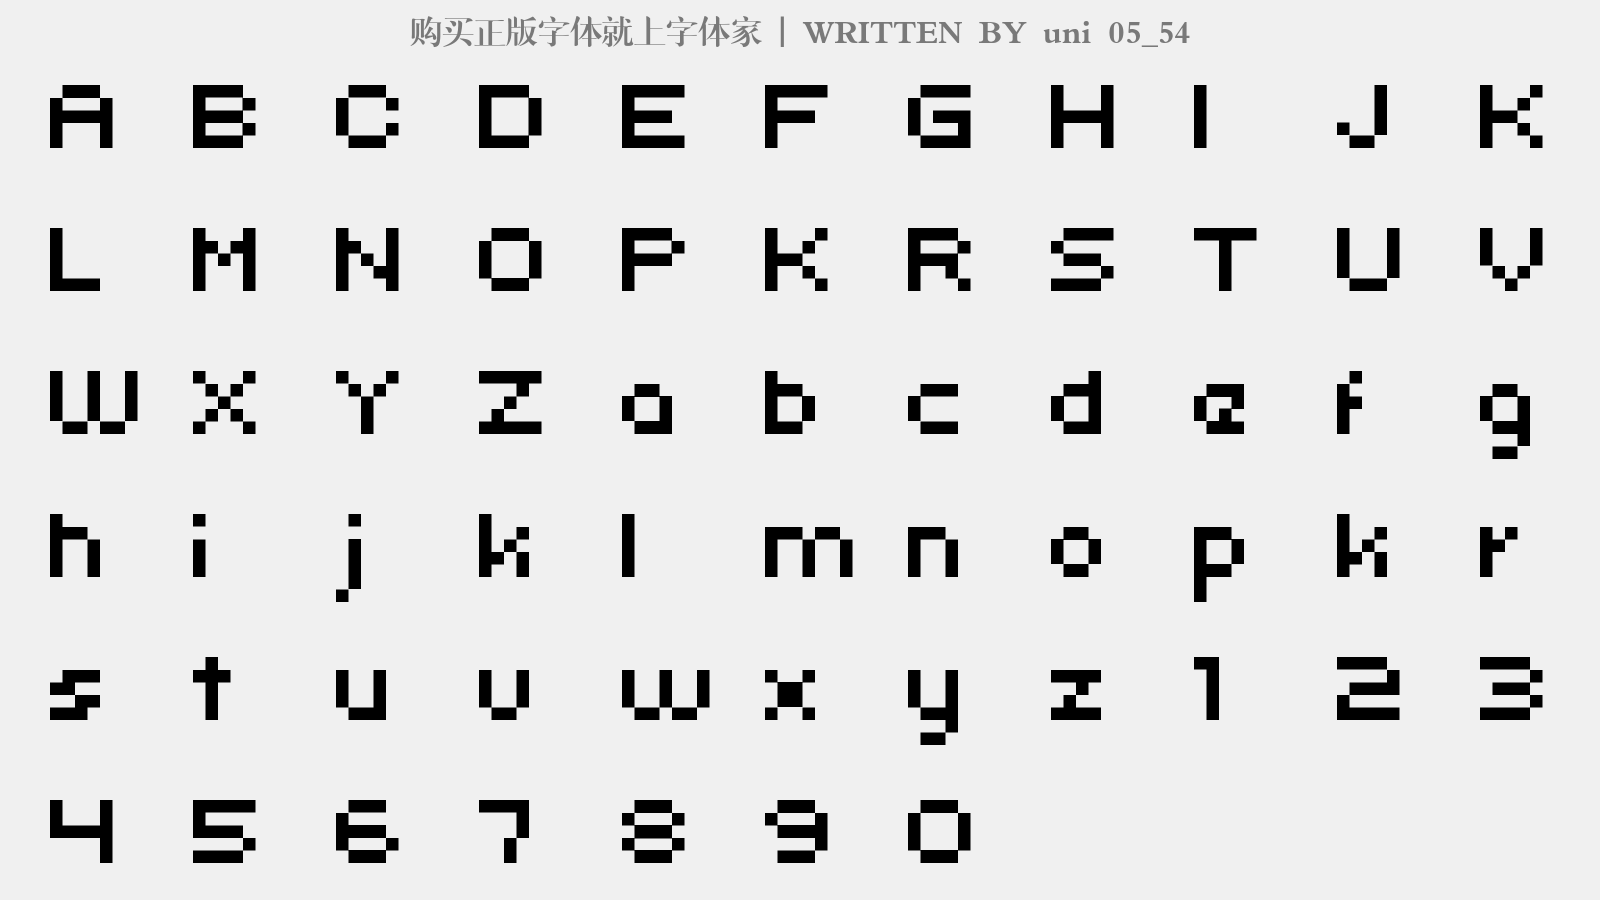 uni 05_54 - 大写字母/小写字母/数字